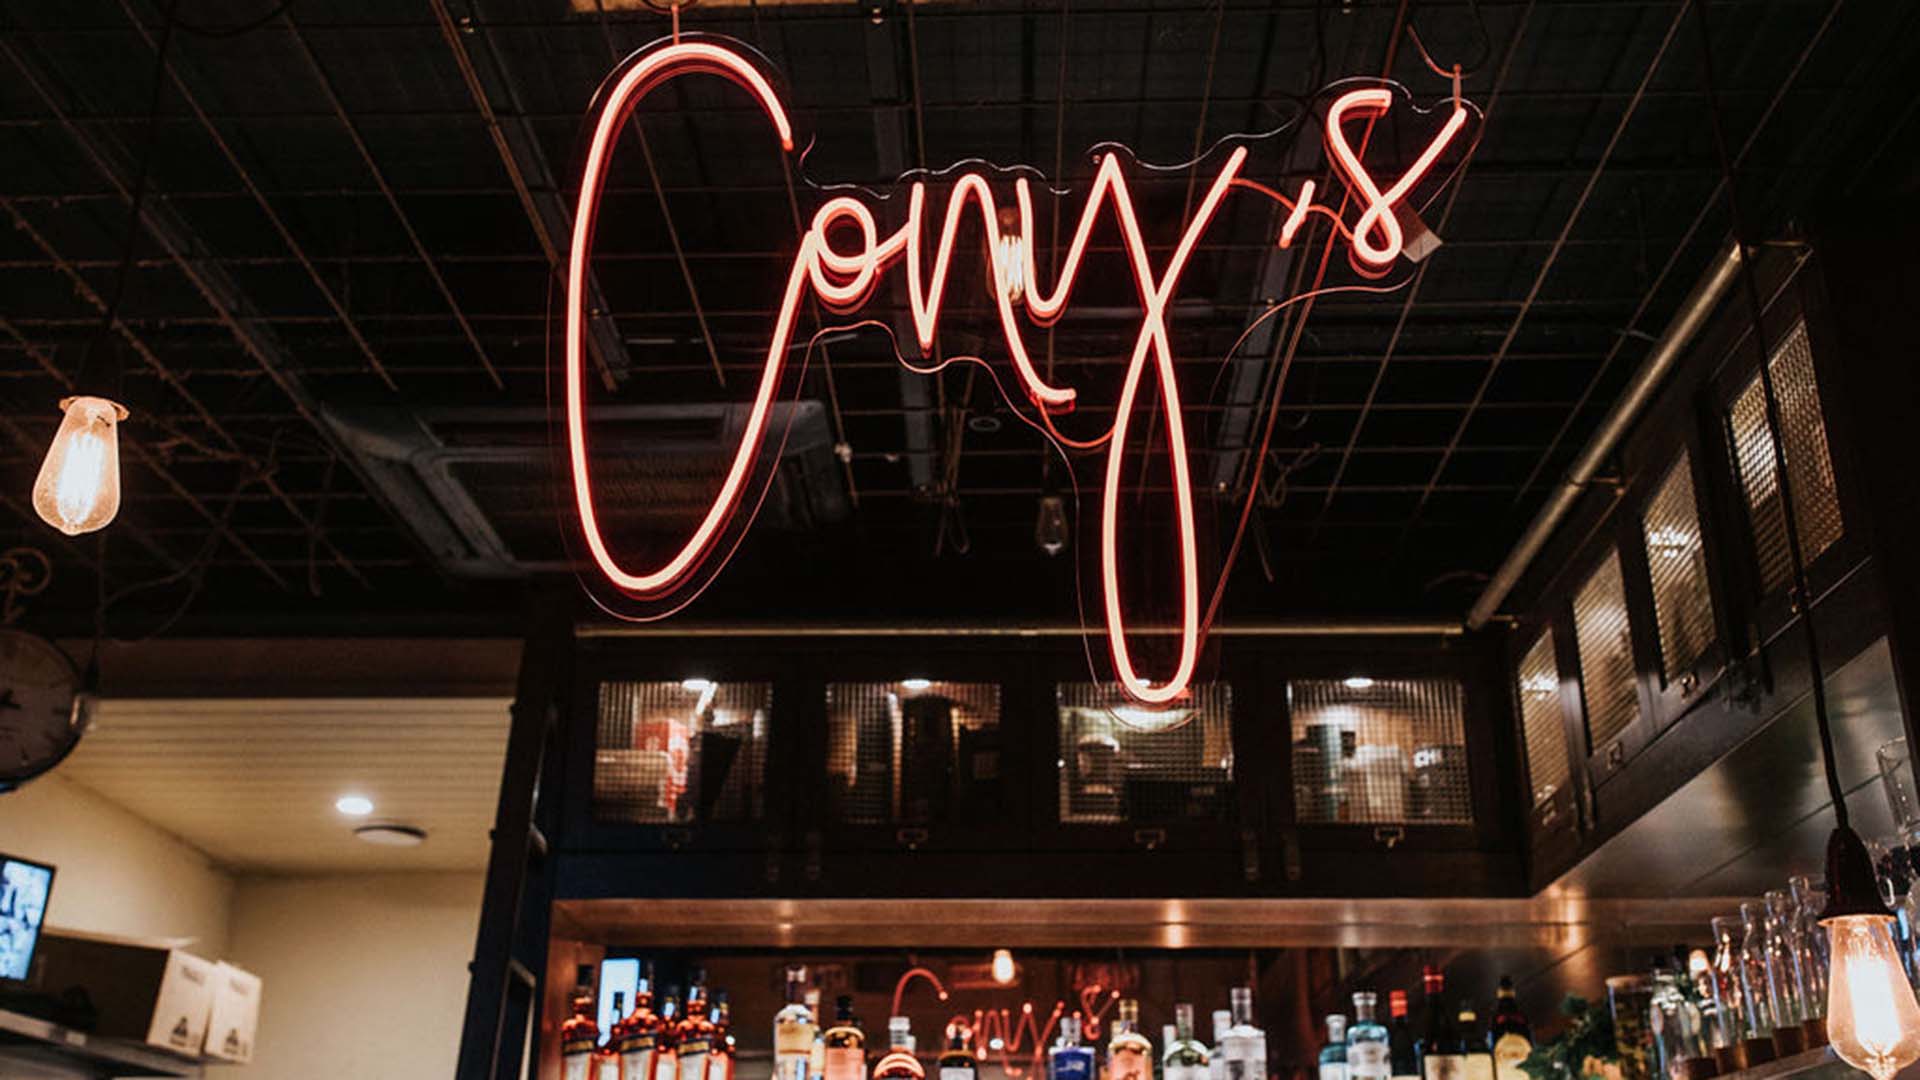 Cony's